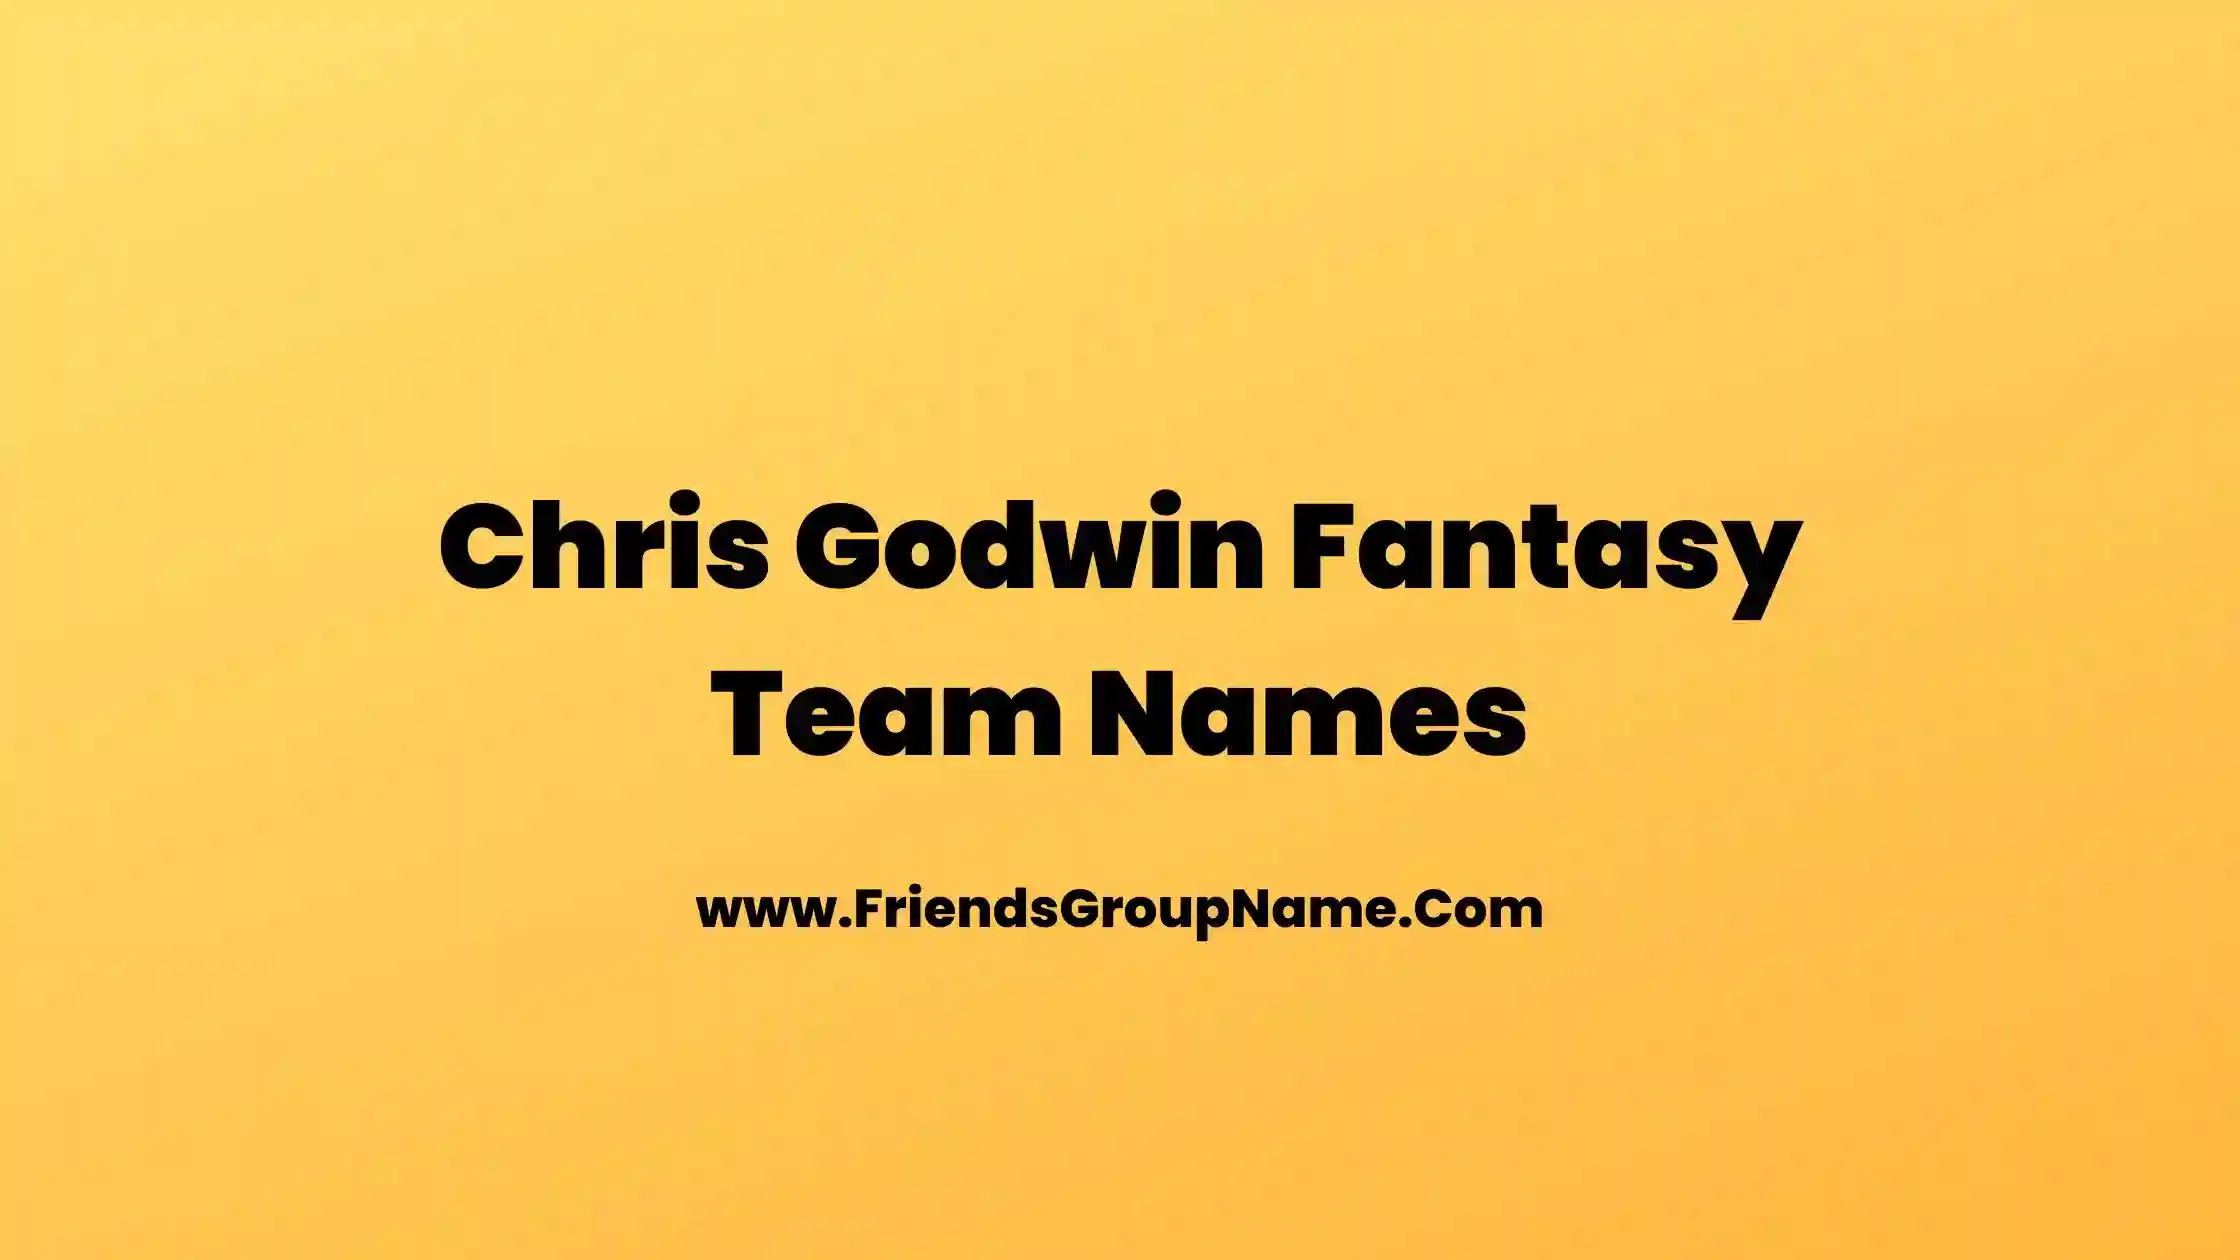 Chris Godwin Fantasy Team Names